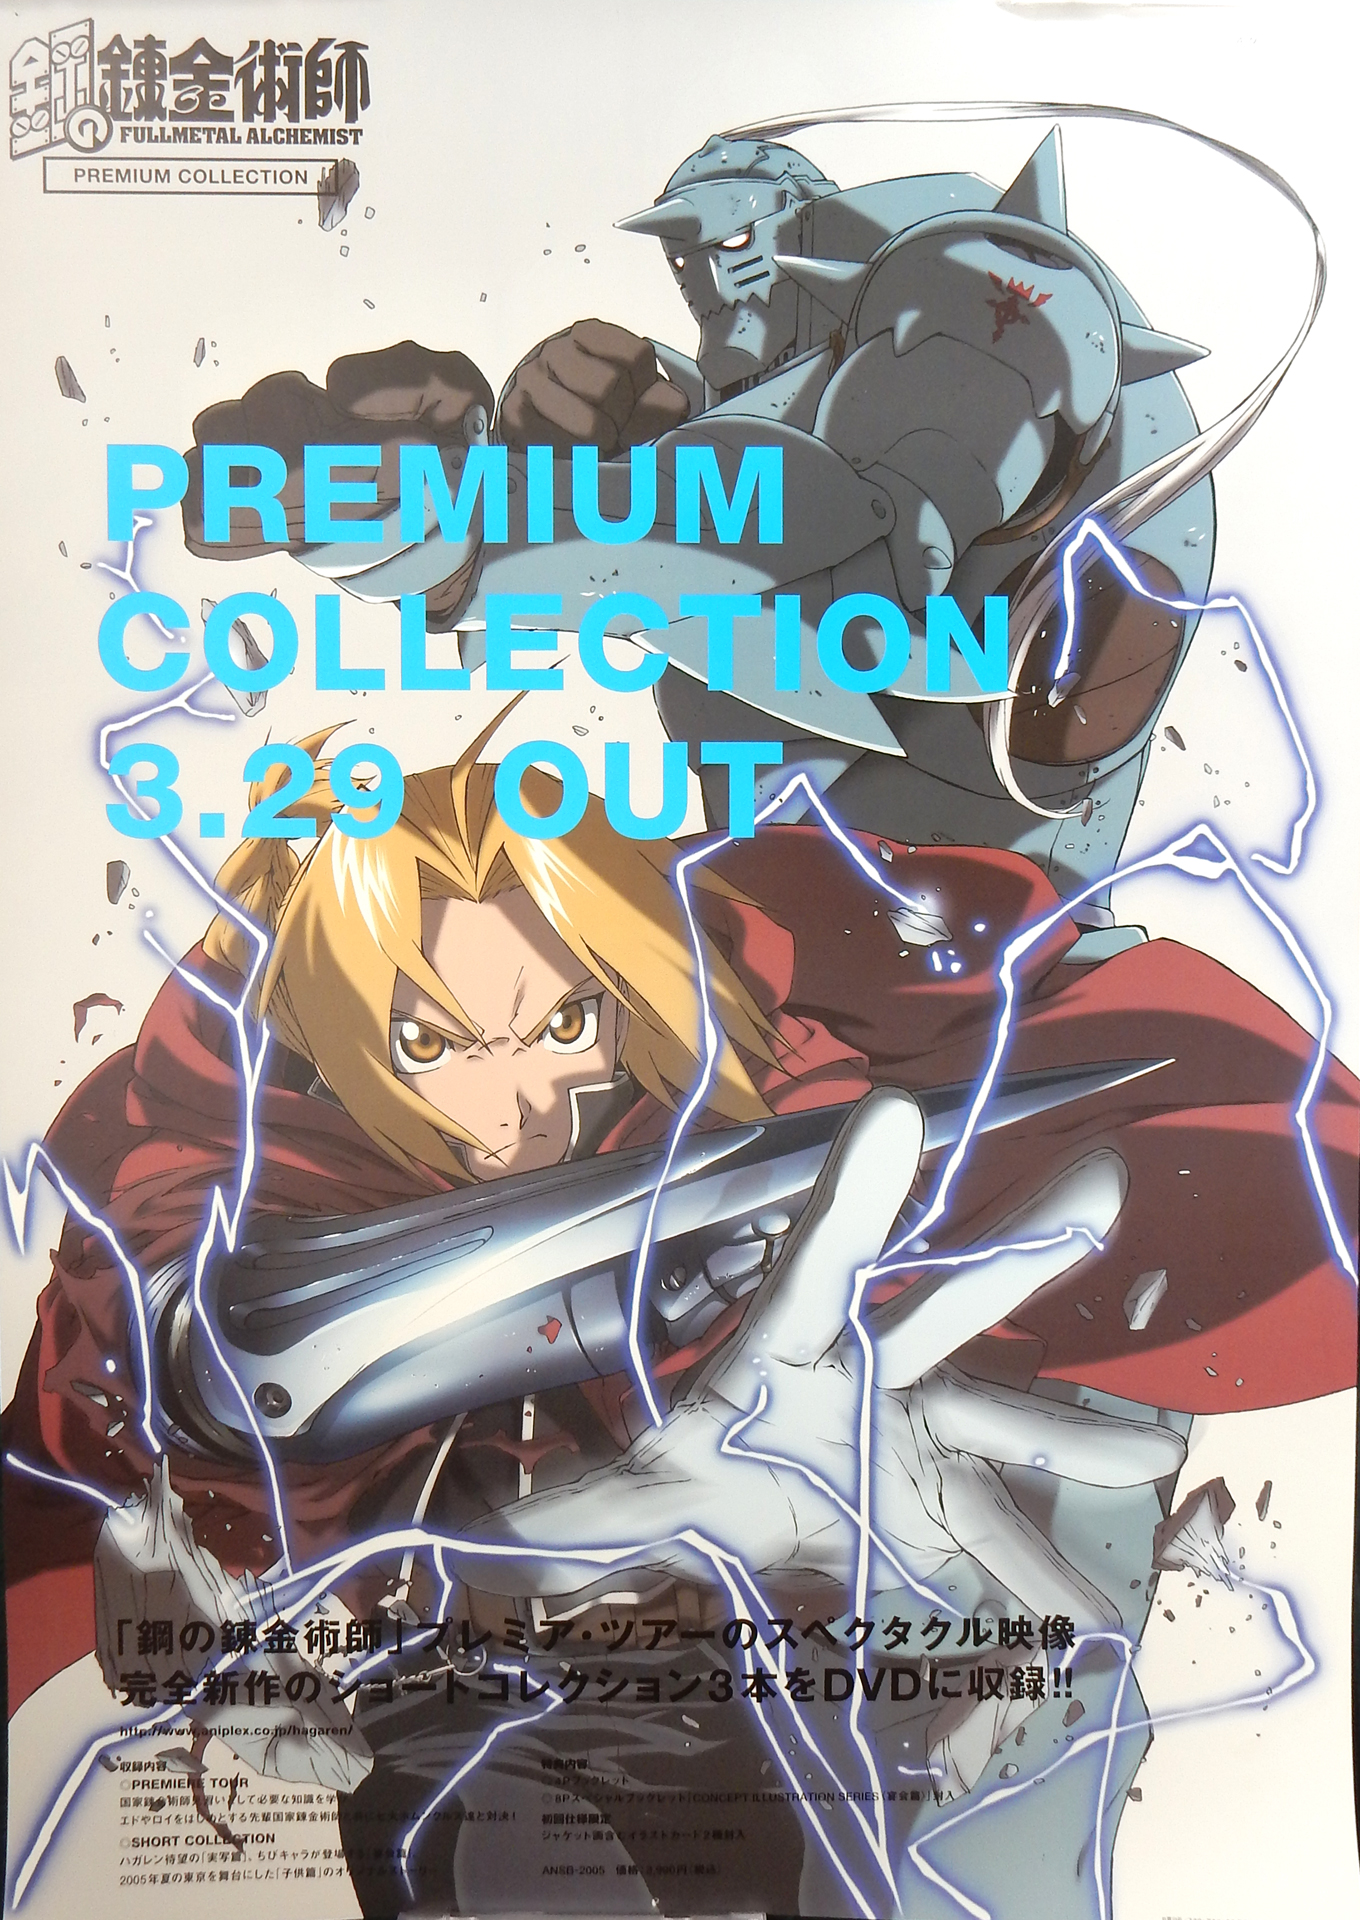 鋼の錬金術師 PREMIUM COLLECTION のポスター